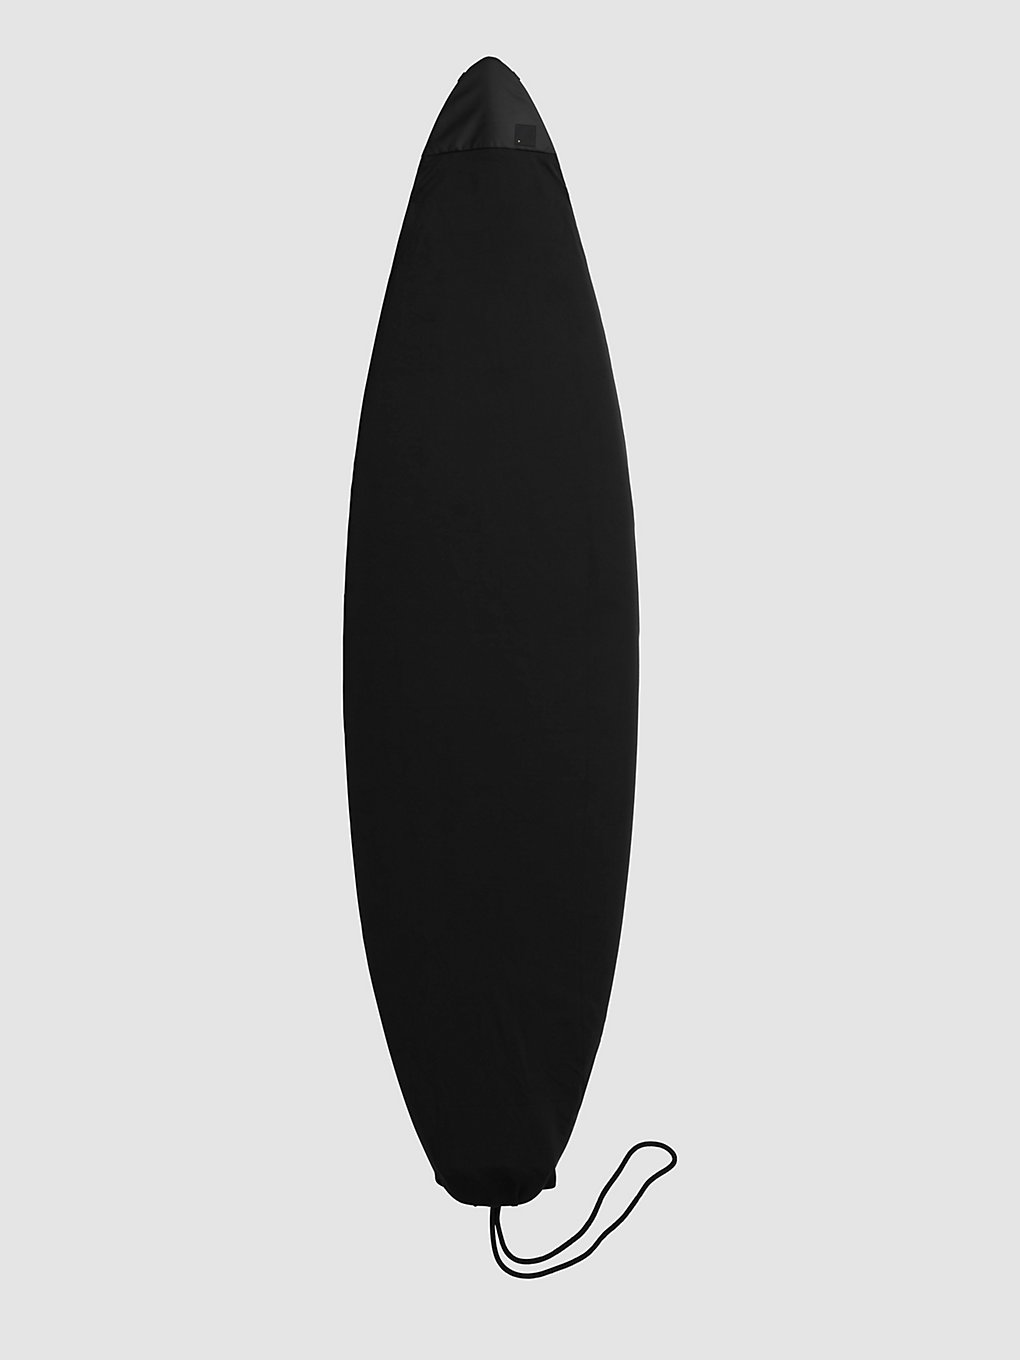 Db Surf Sock 6'3" Stab Ltd Surfboard Bag stab ltd kaufen